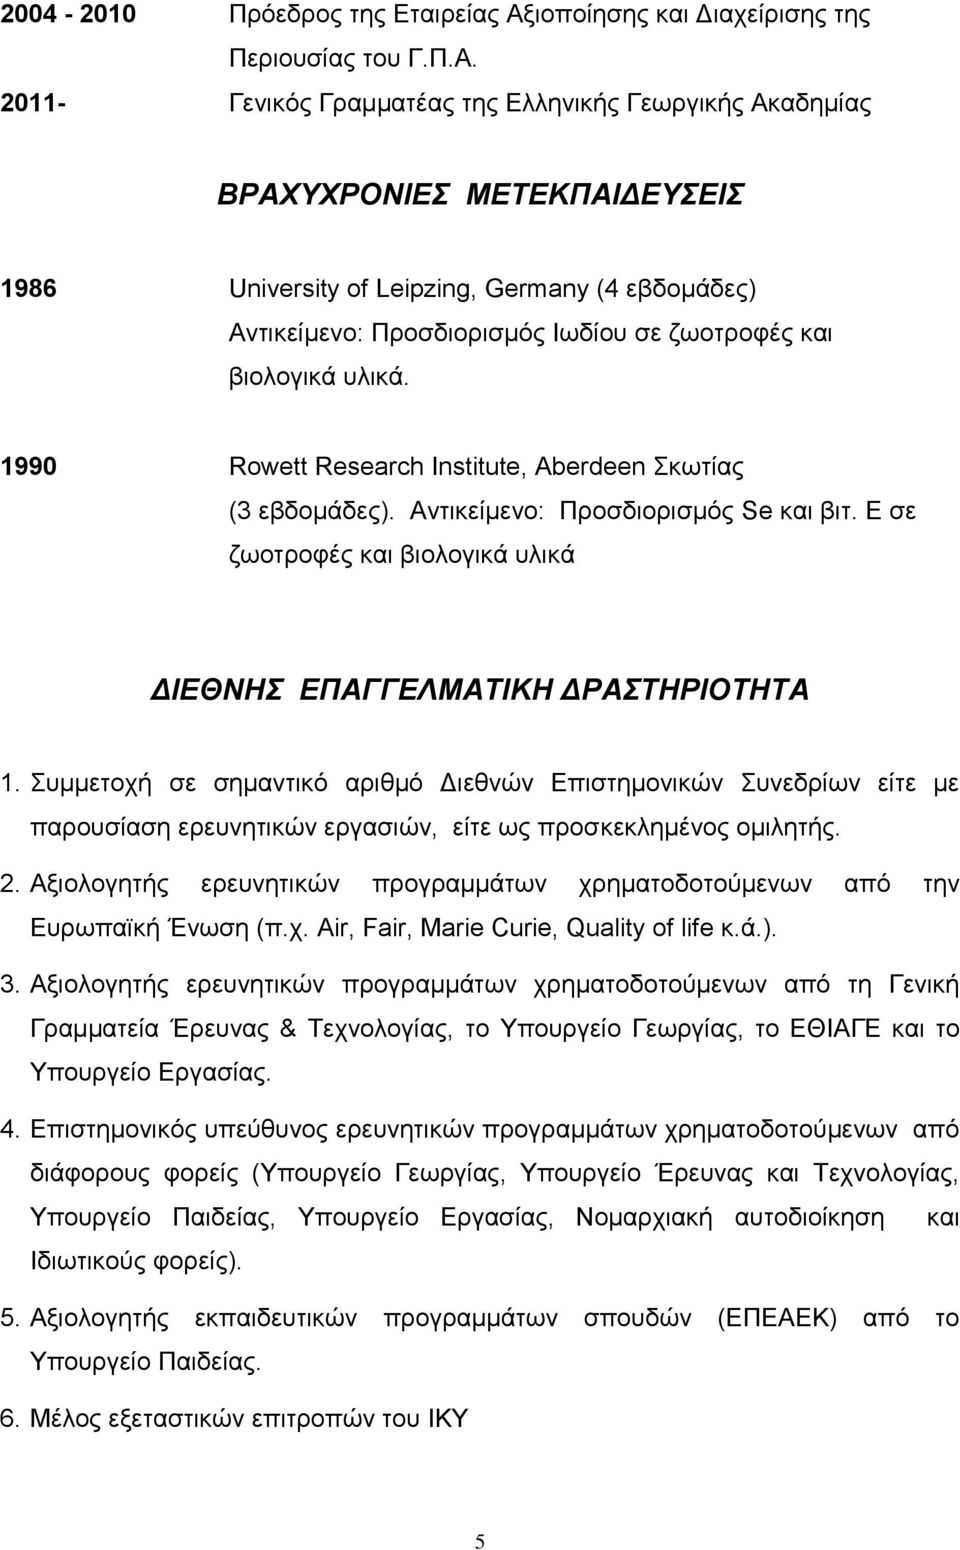 2011- Γενικός Γραμματέας της Ελληνικής Γεωργικής Ακαδημίας ΒΡΑΧΥΧΡΟΝΙΕΣ ΜΕΤΕΚΠΑΙΔΕΥΣΕΙΣ 1986 University of Leipzing, Germany (4 εβδομάδες) Αντικείμενο: Προσδιορισμός Ιωδίου σε ζωοτροφές και βιολογικά